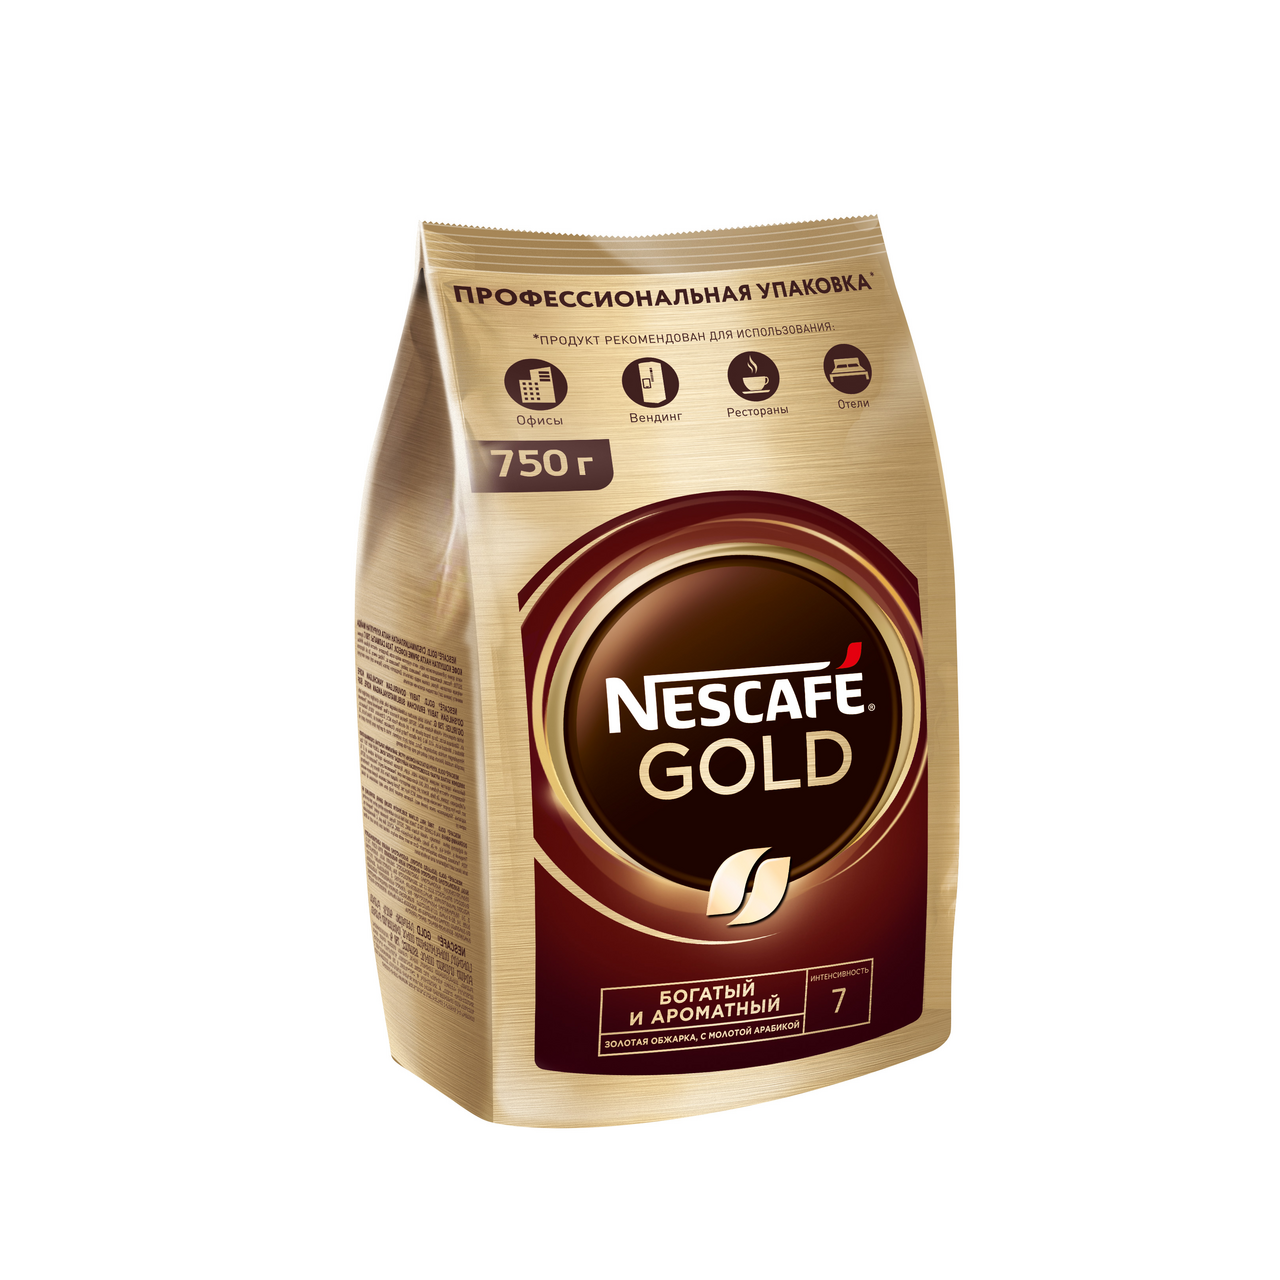 Nescafe gold молотый. Nescafe Gold 750г. Кофе Нескафе Голд в мягкой упаковке. Нескафе Голд 180 г в мягкой упаковке. Кофе Нескафе Голд 75гр.